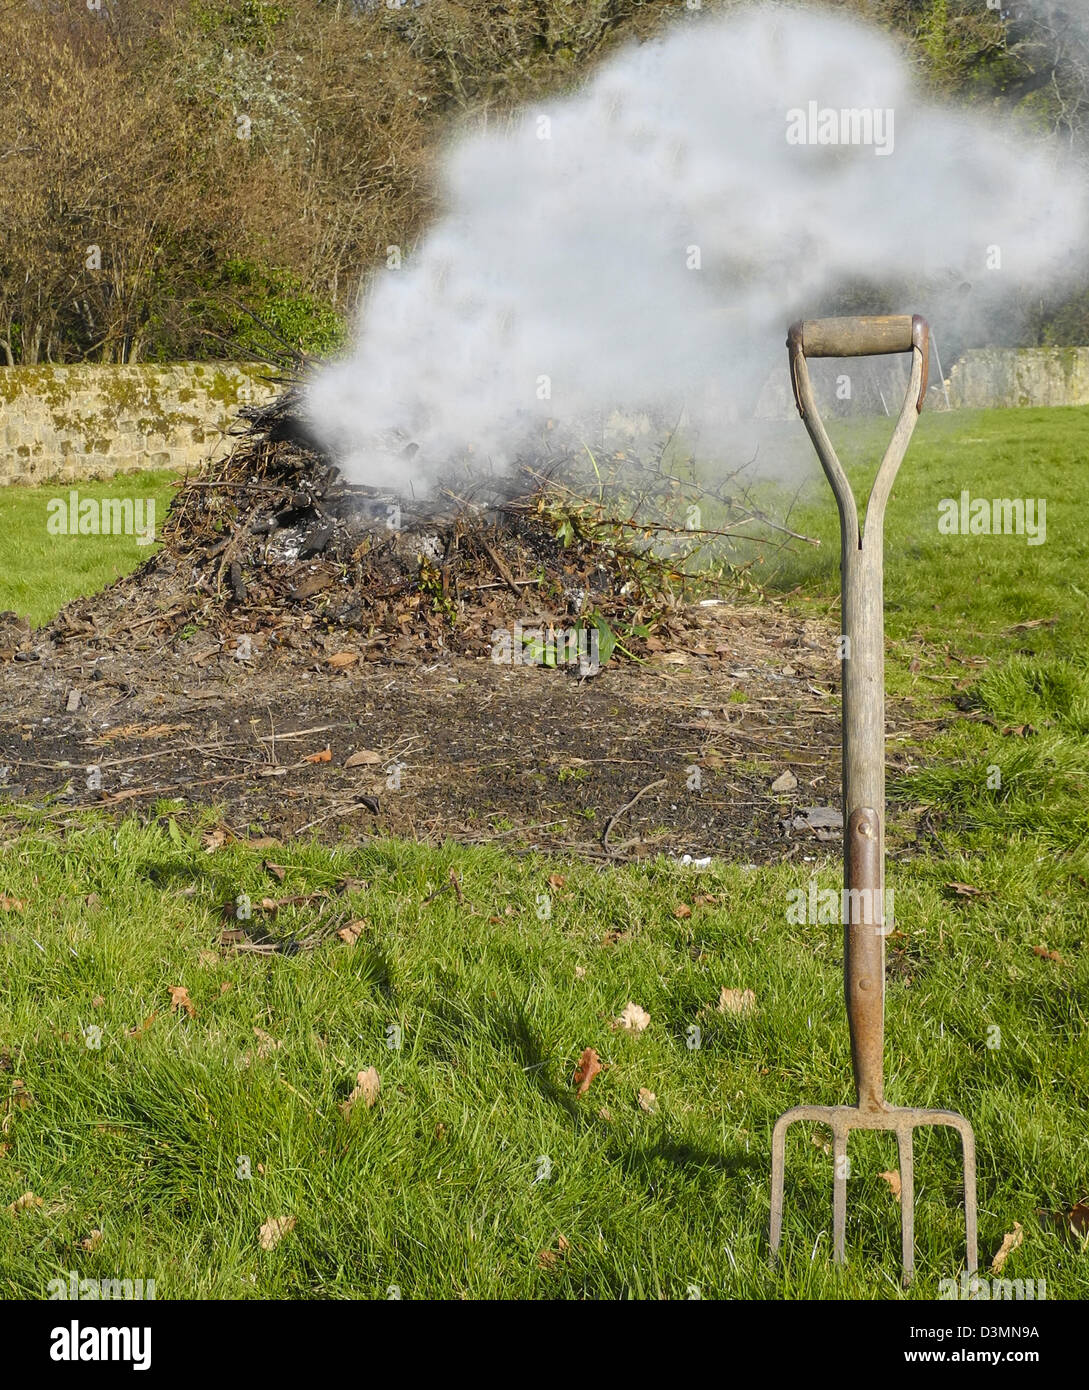 A garden bonfire - burning garden waste Stock Photo